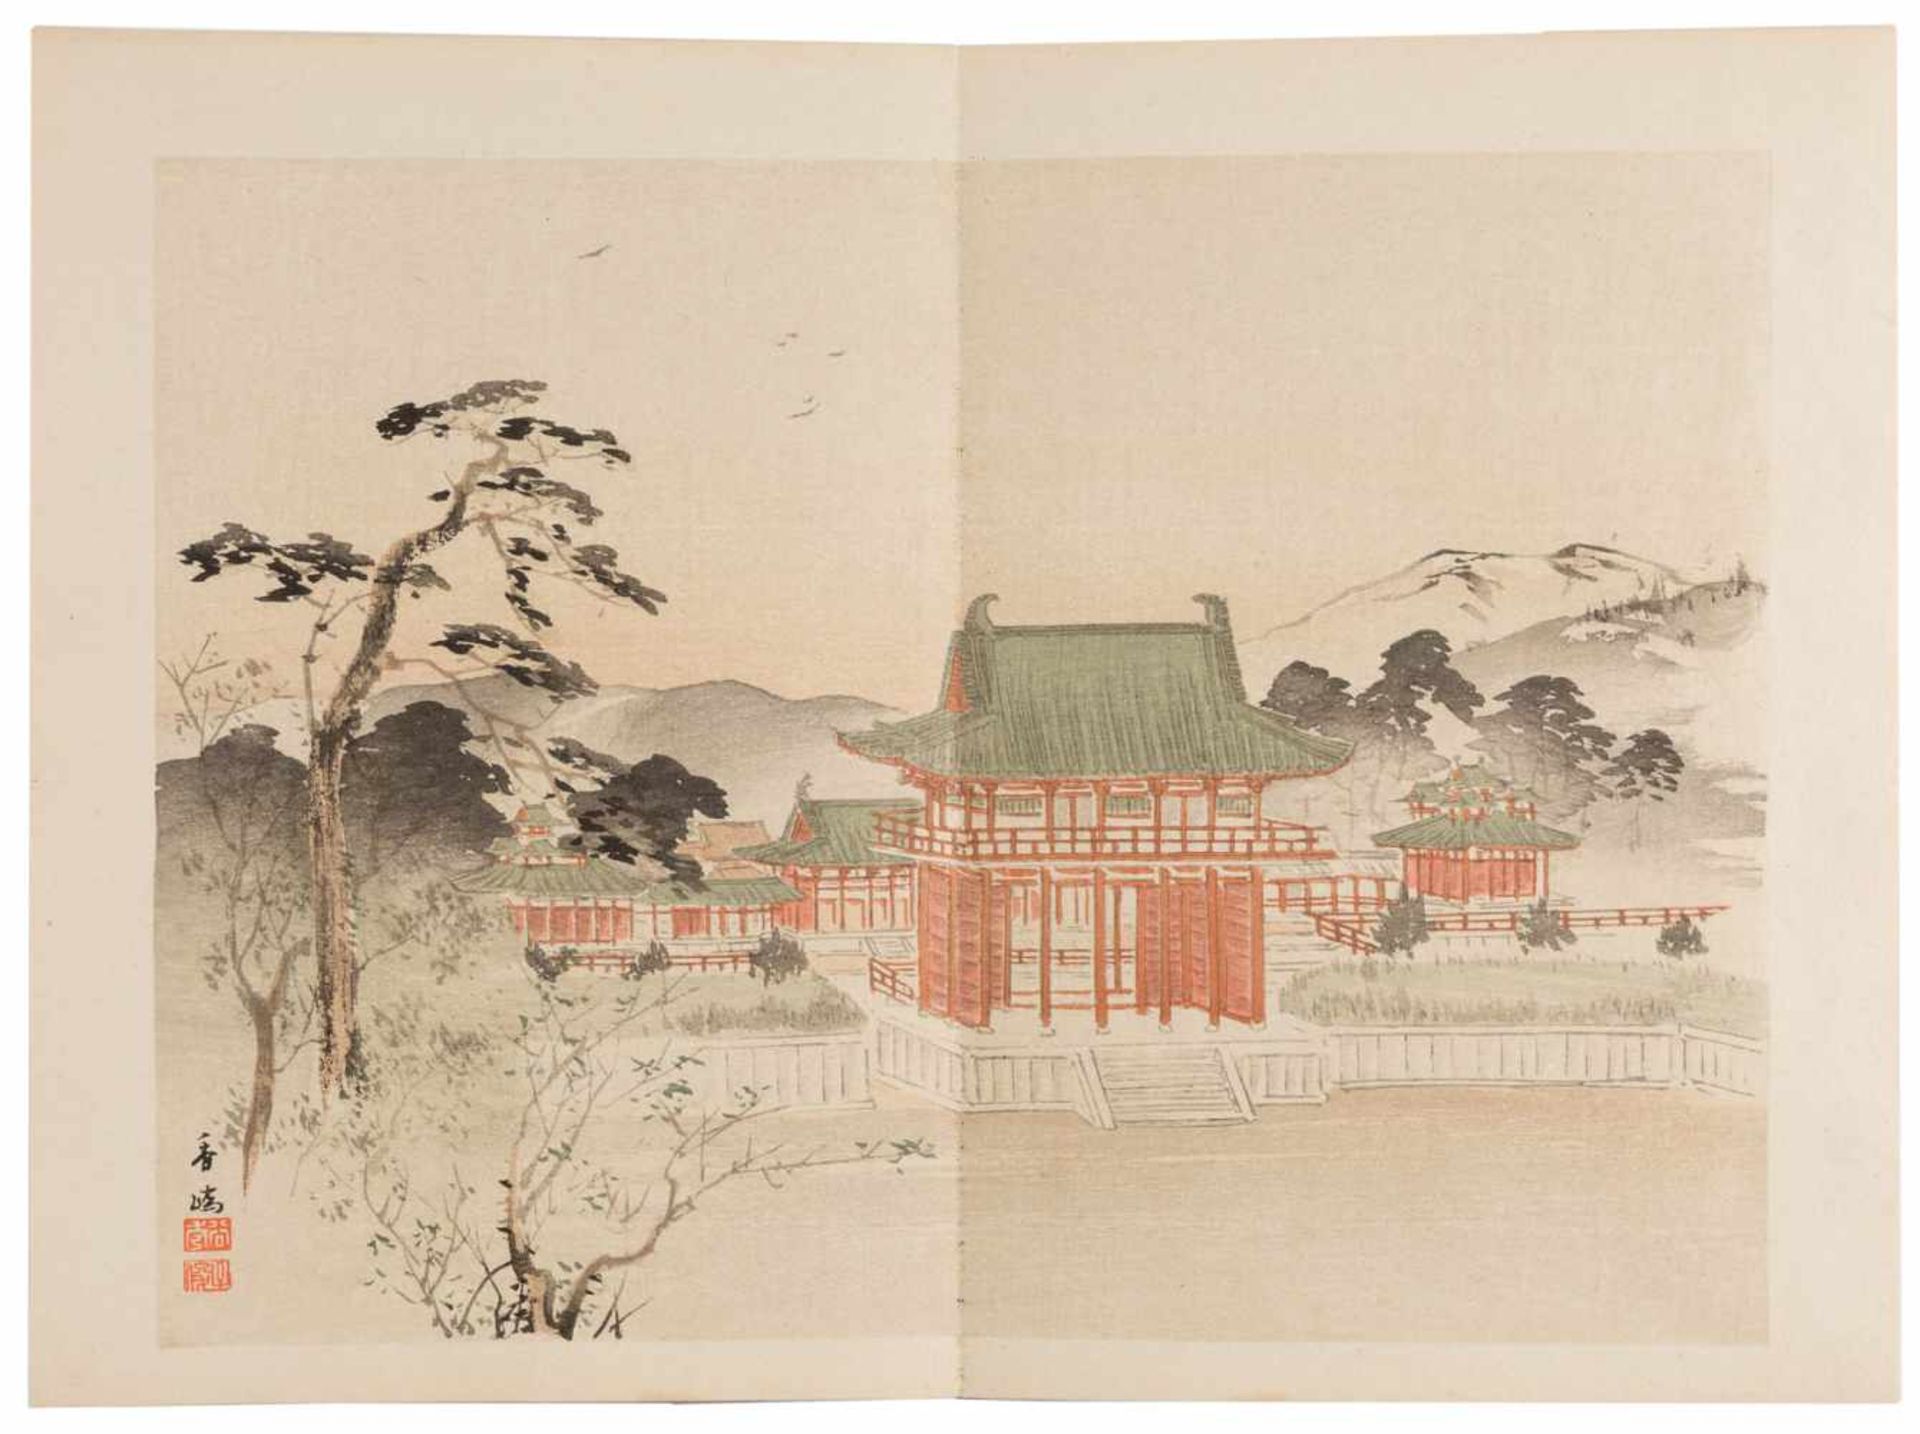 DREI BÜCHER MIT LANDSCHAFTLICHEN SZENEN Japan, 1895 Druck auf Papier. Ca. 23,5 cm x 16 cm. - Bild 3 aus 7